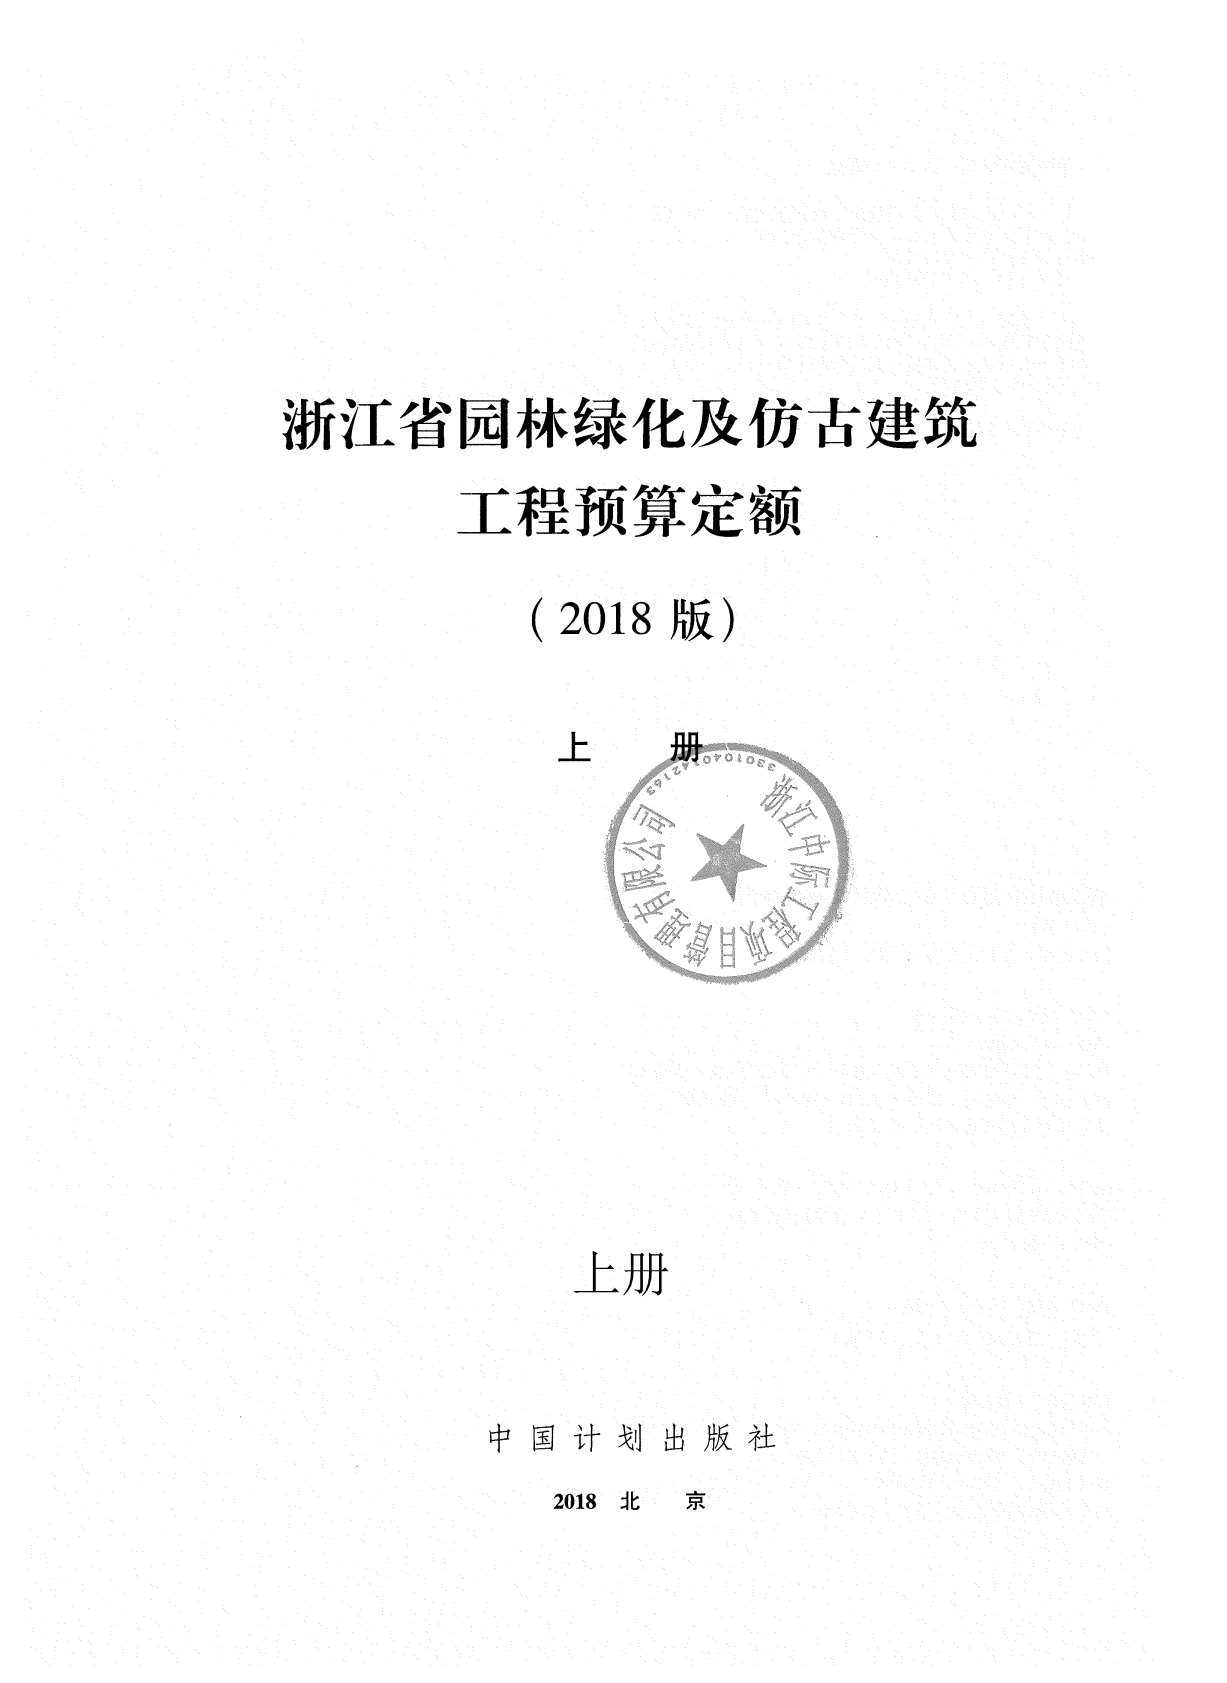 2018浙江省园林绿化及仿古建筑工程预算定额(上册)